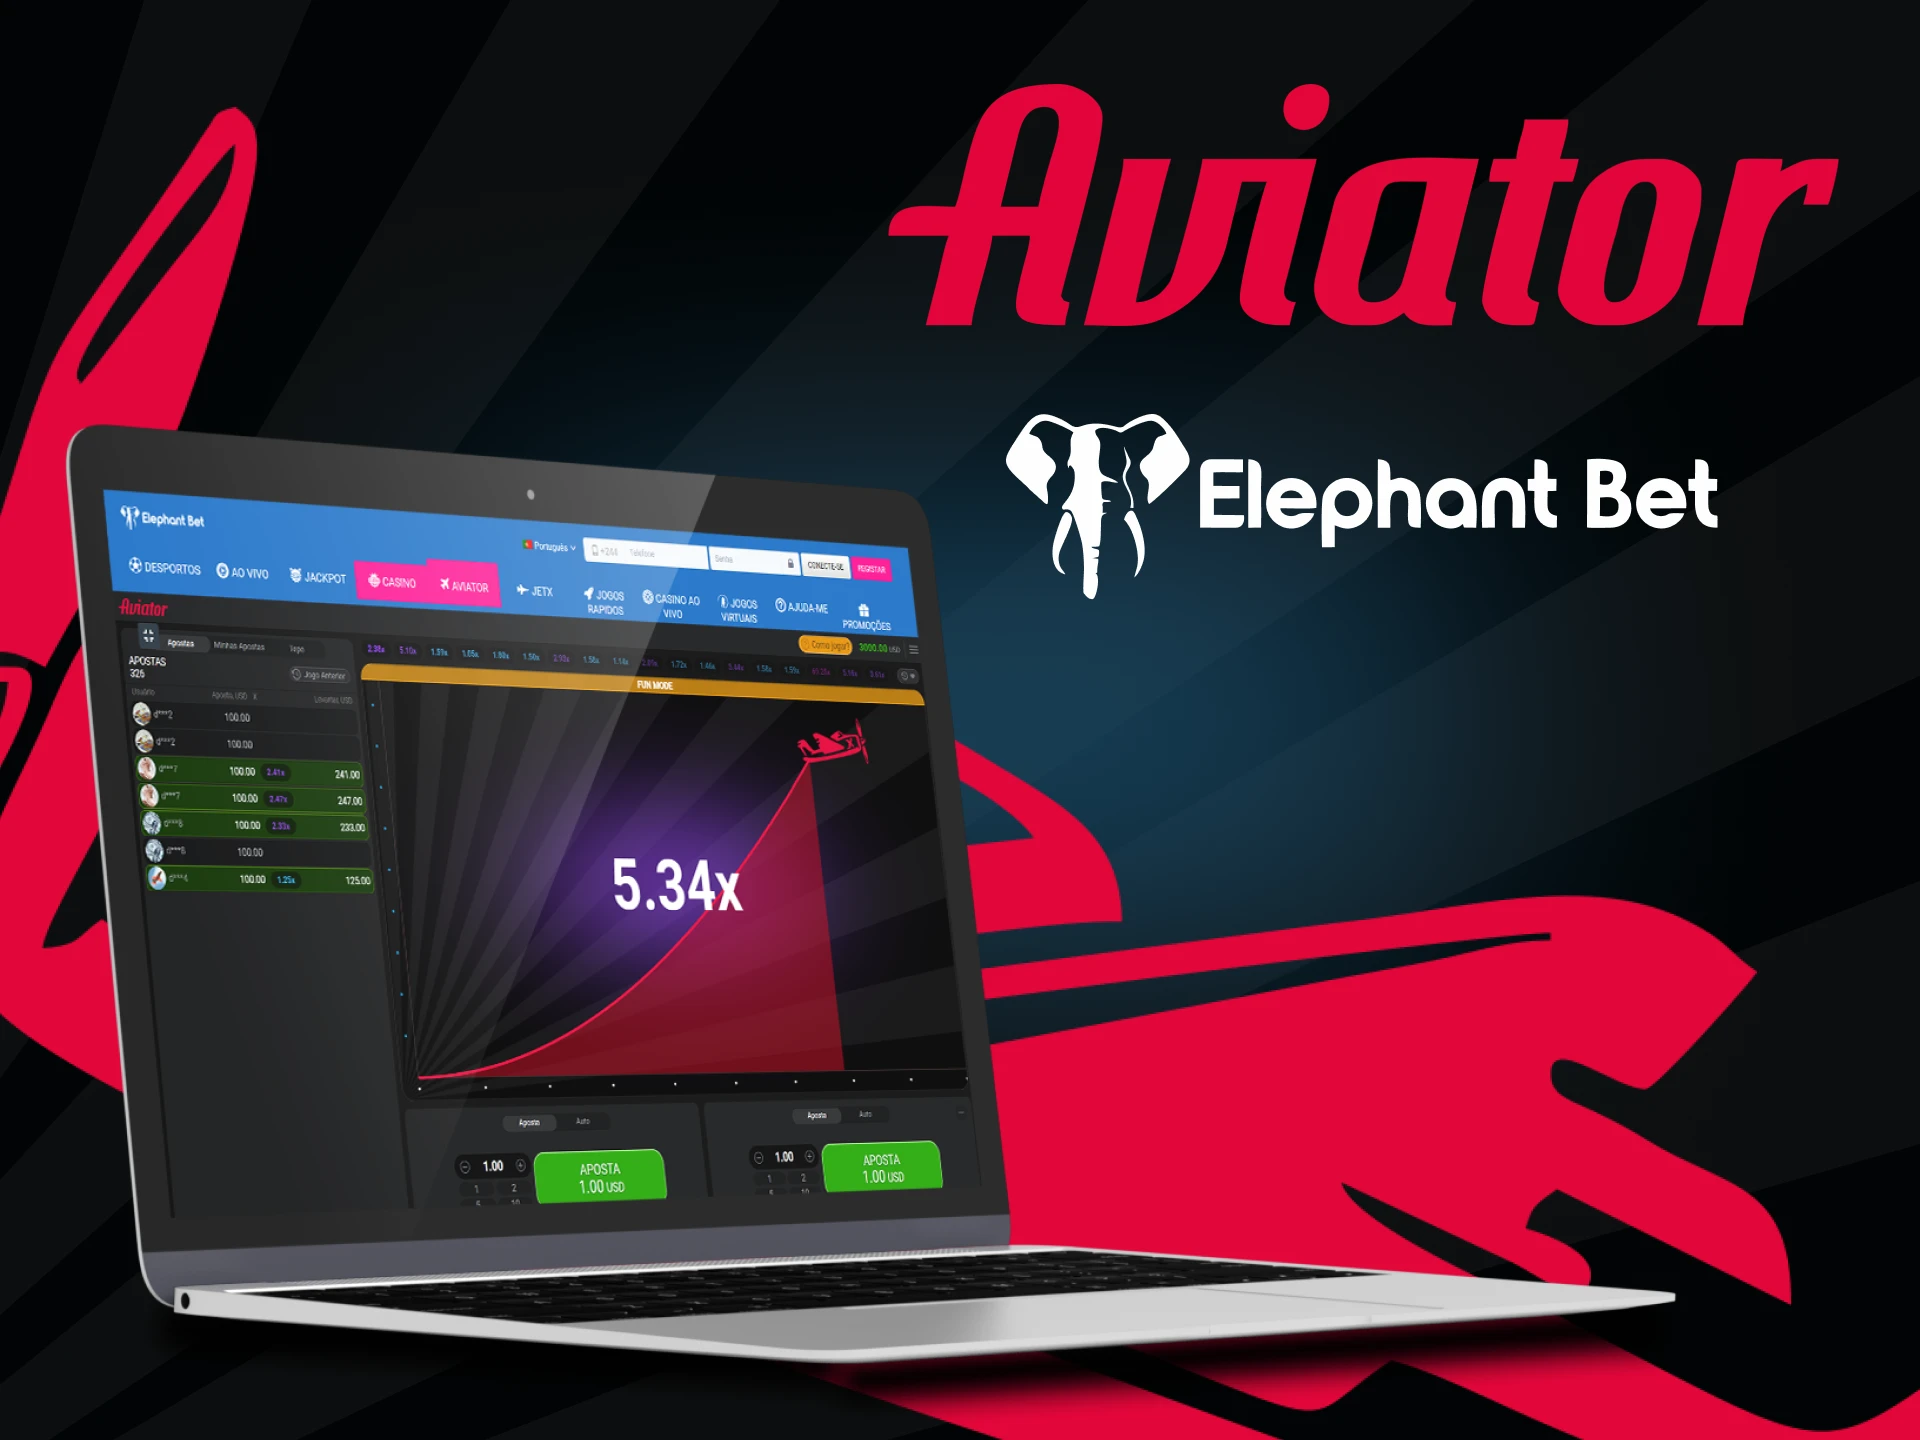 Para jogar Aviator, escolha o serviço Elephantbet.